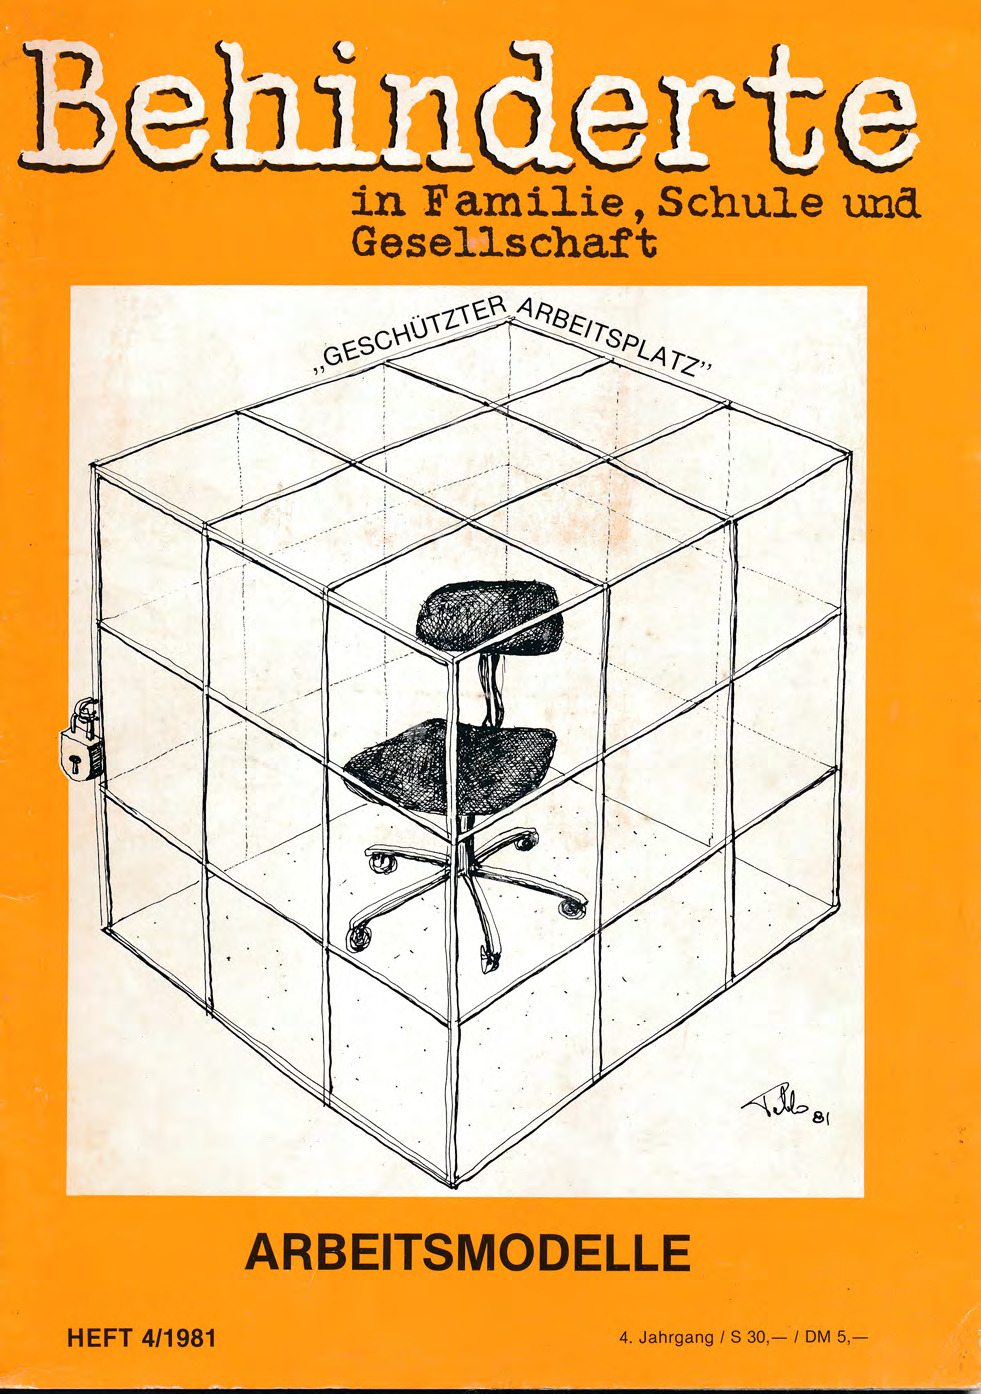 Titelbild der Zeitschrift BEHINDERTE MENSCHEN, Ausgabe 4/1981 "Arbeitsmodelle"